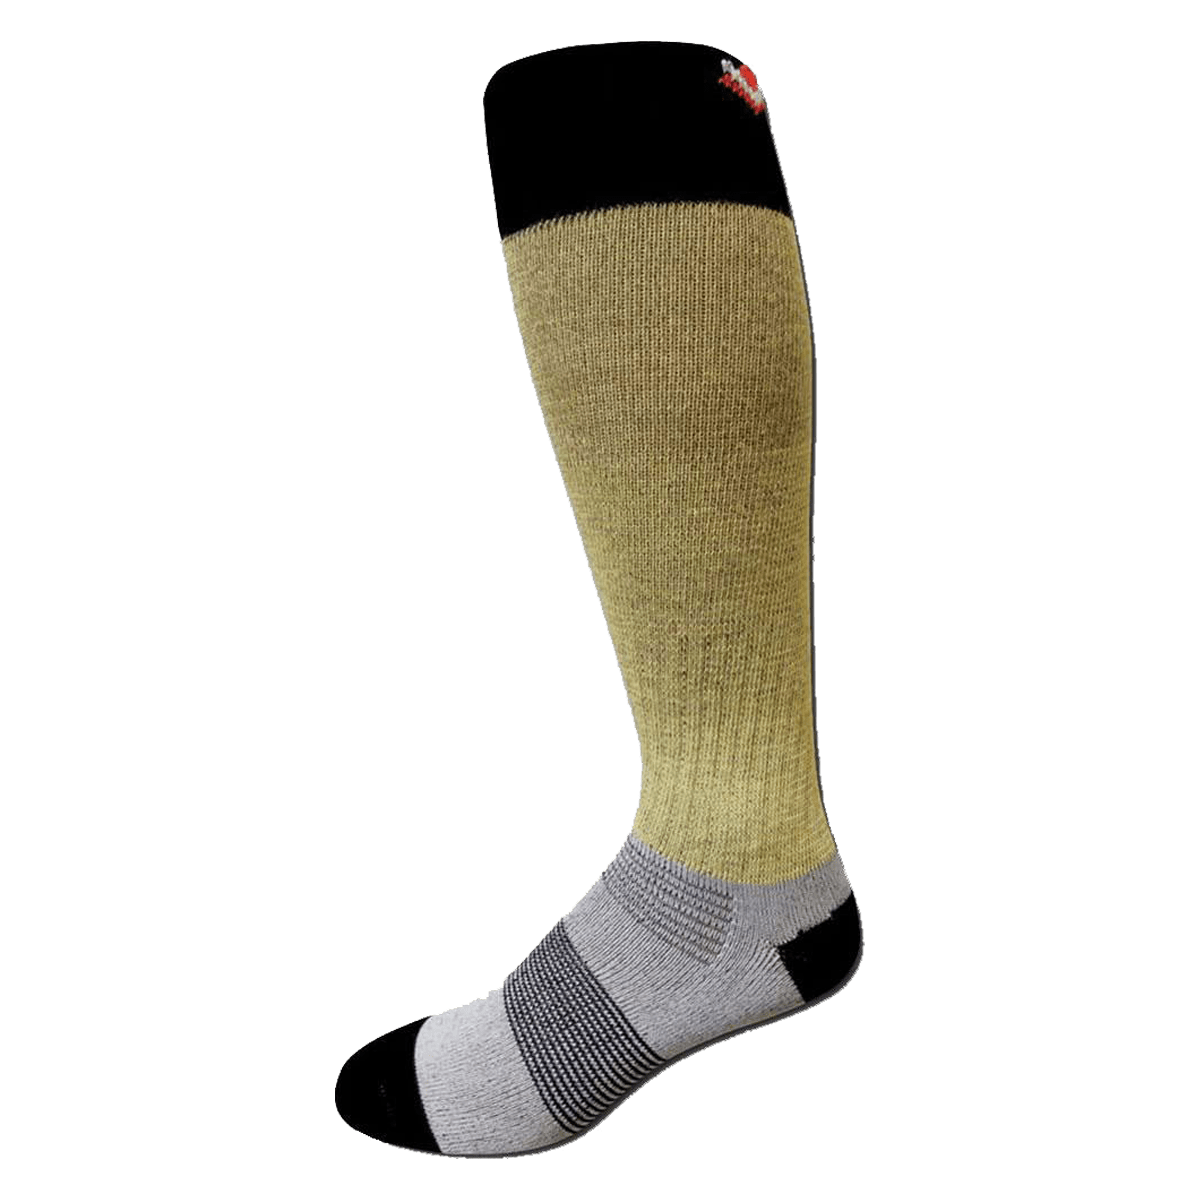 Veba Kevlar Hockey Socks - 2 Pack